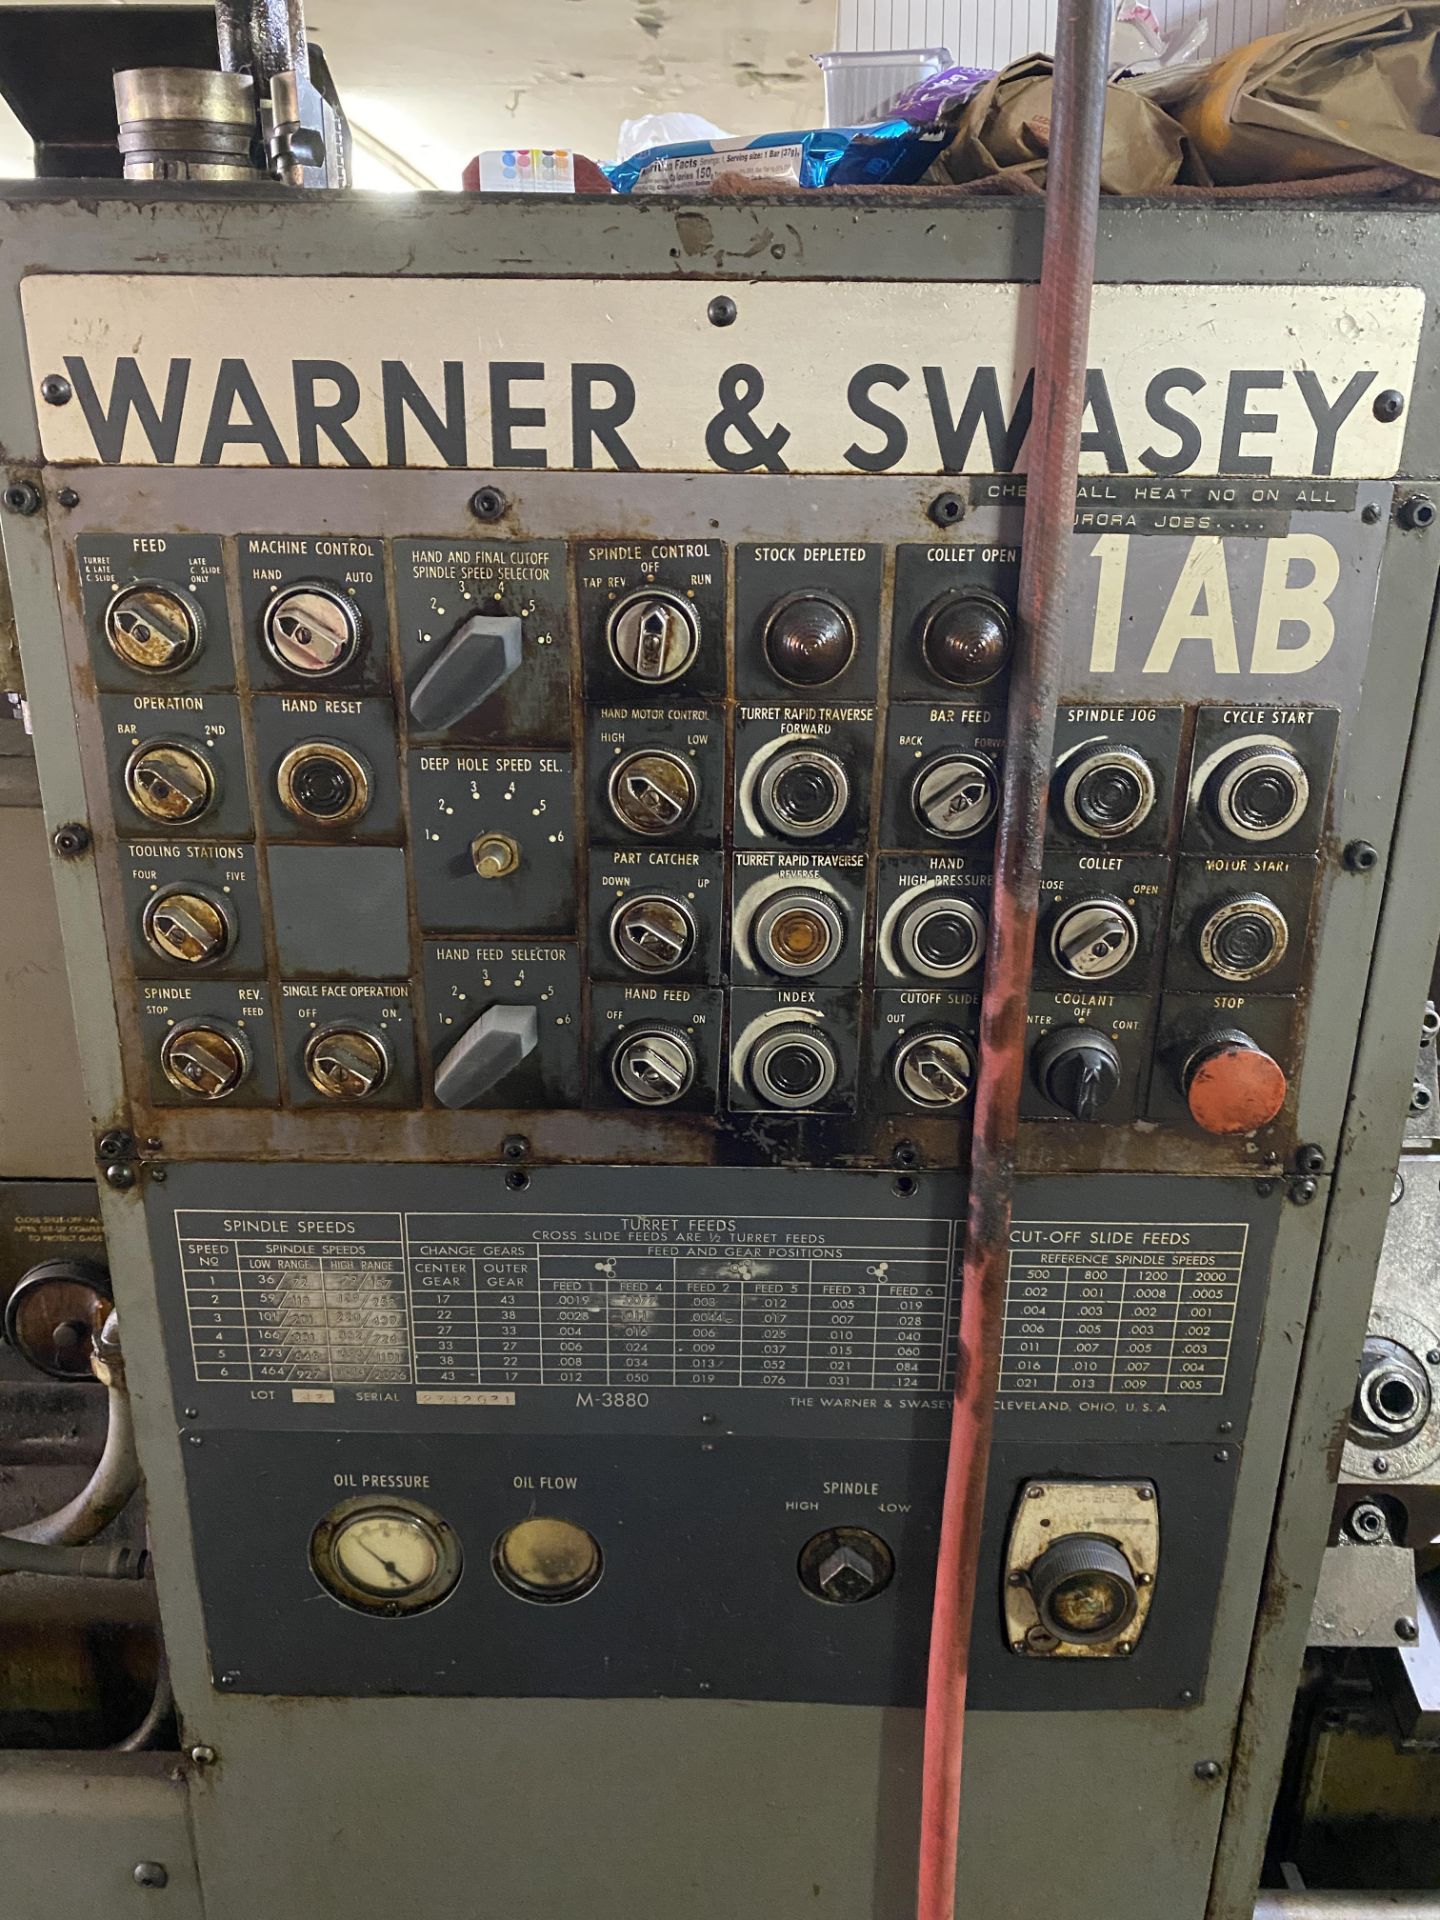 WARNER & SWASEY 1AB AUTOMATIC LATHE - Image 7 of 9